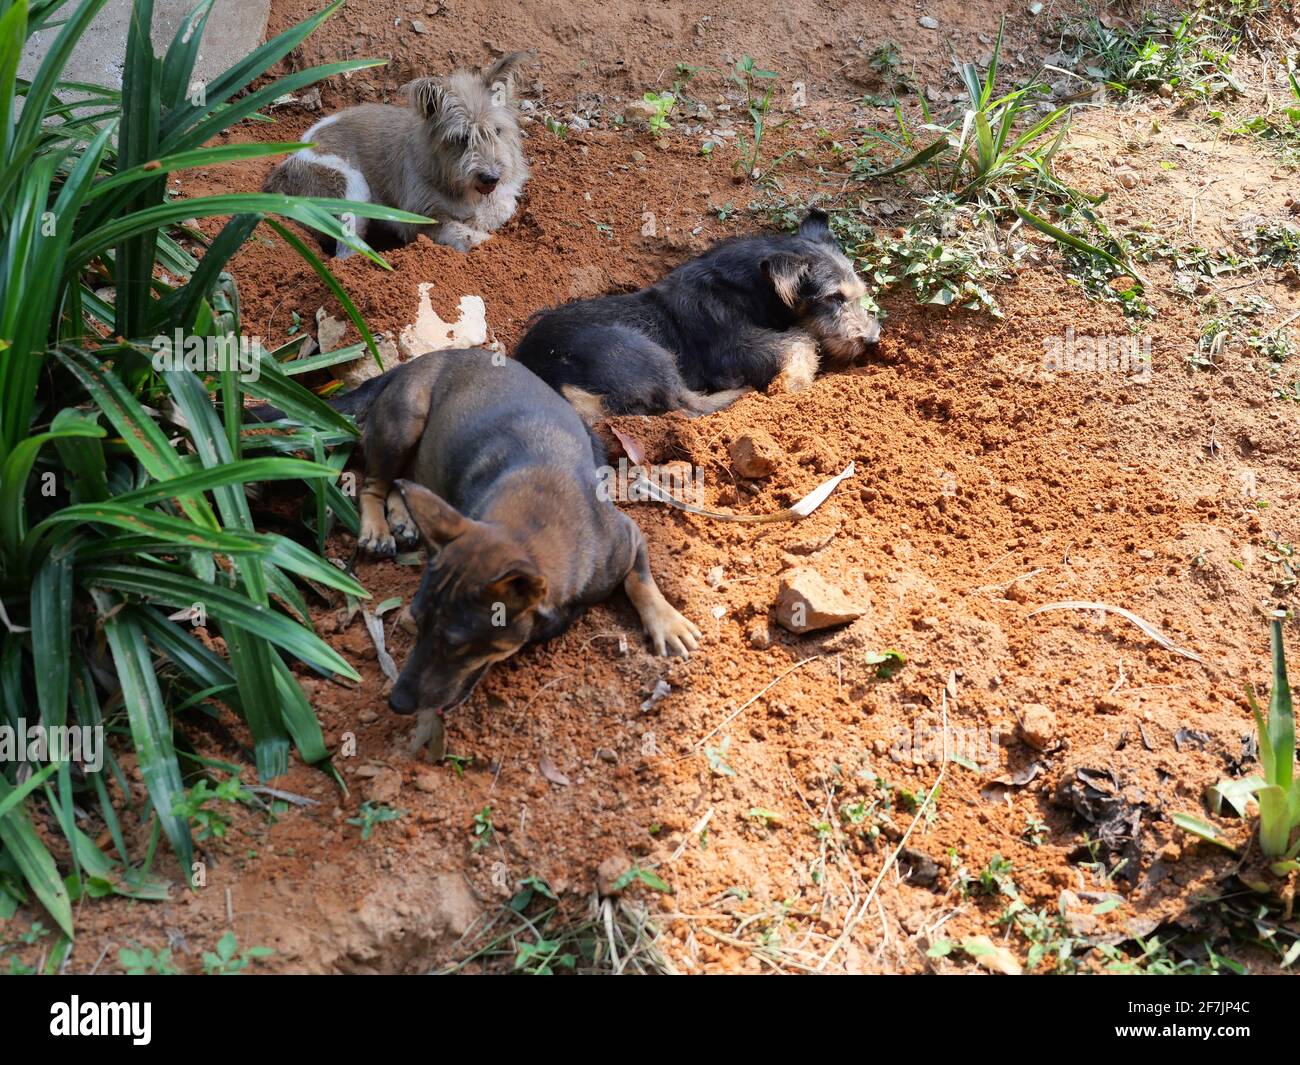 Cane a strisce nero e marrone che riposa nel buco scavato dove scavare, comportamento naturale degli animali domestici all'aperto Foto Stock